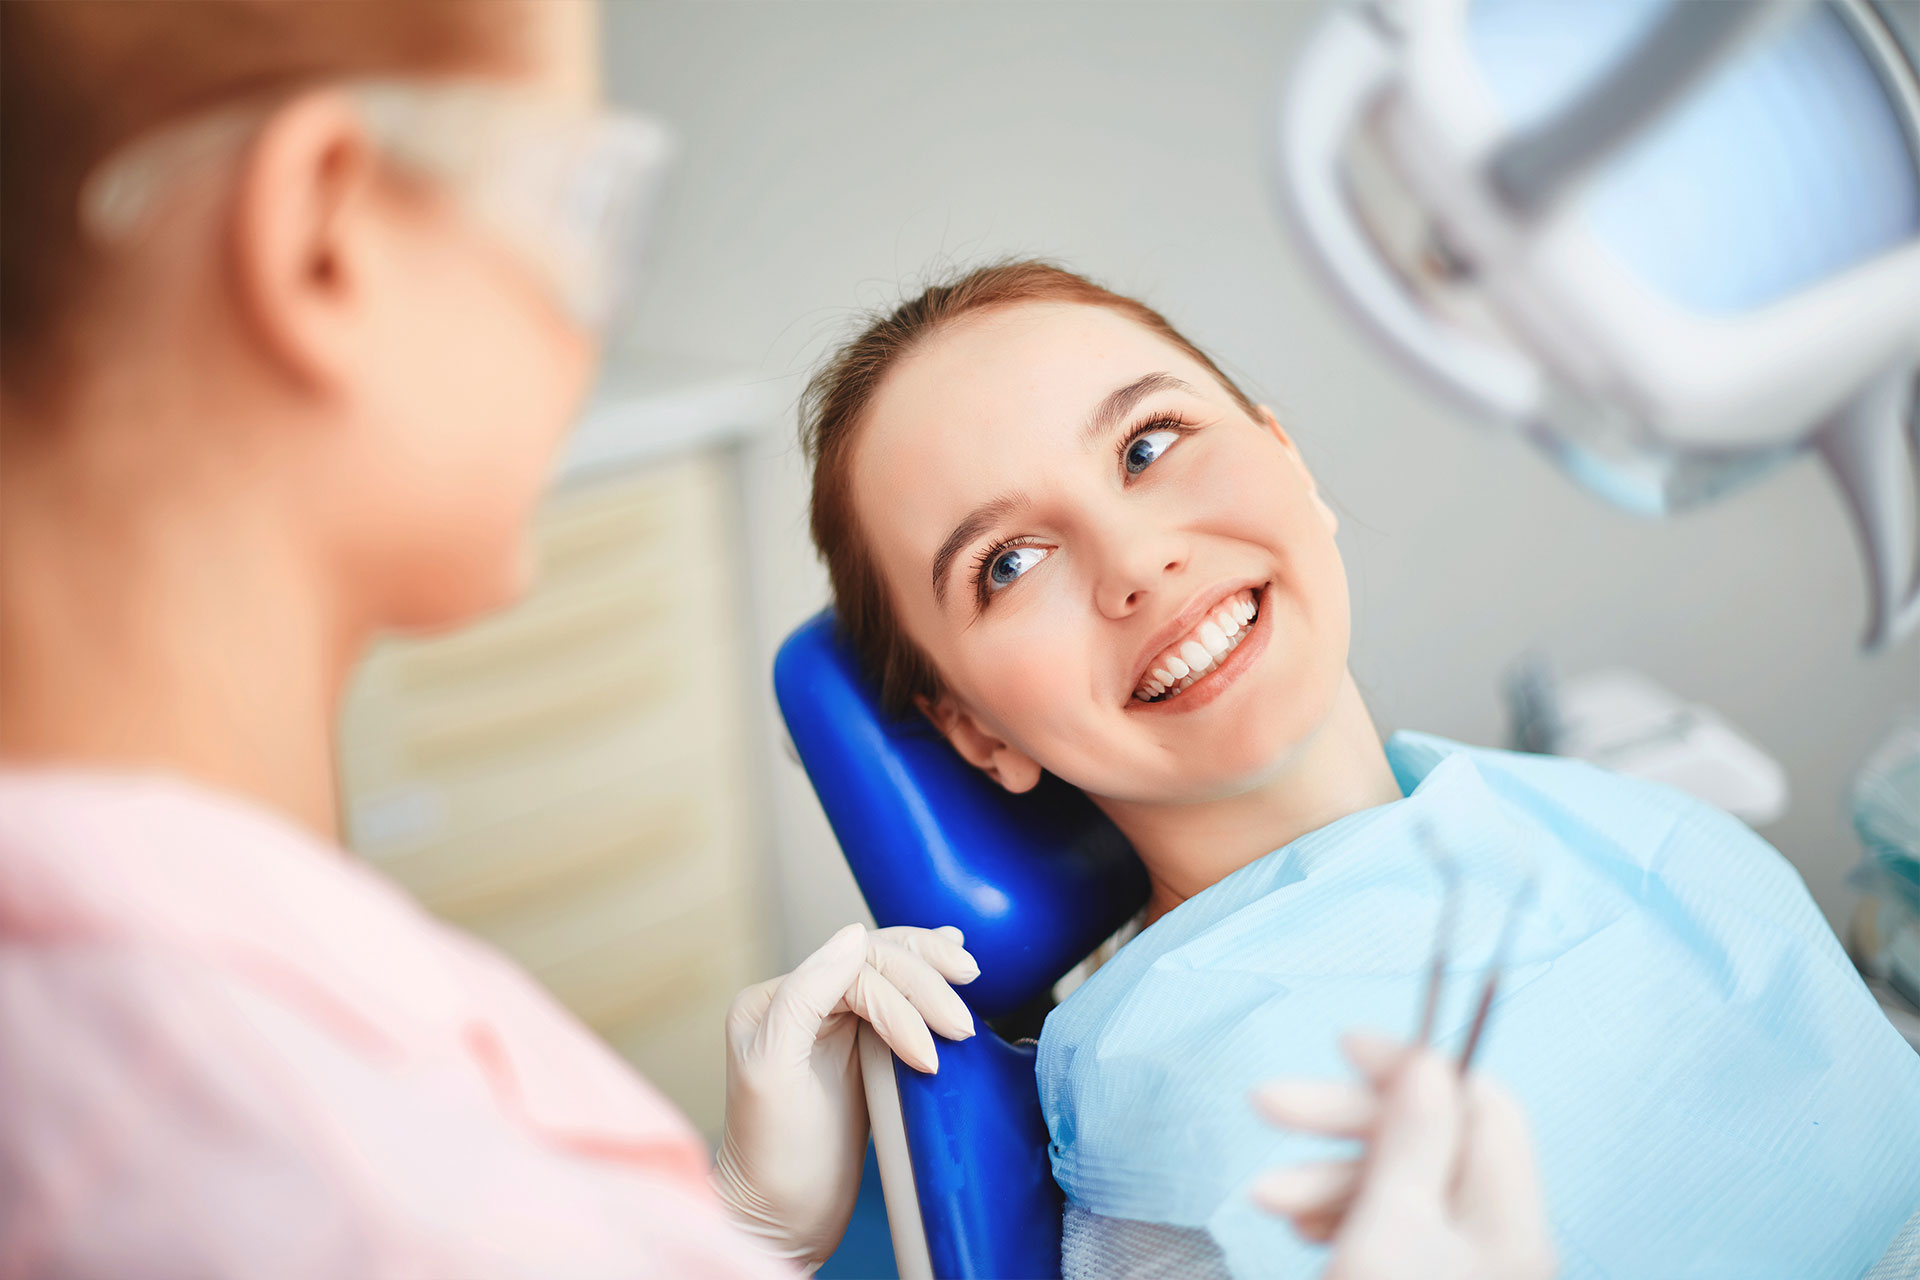 Ортодонтическое лечение зубов